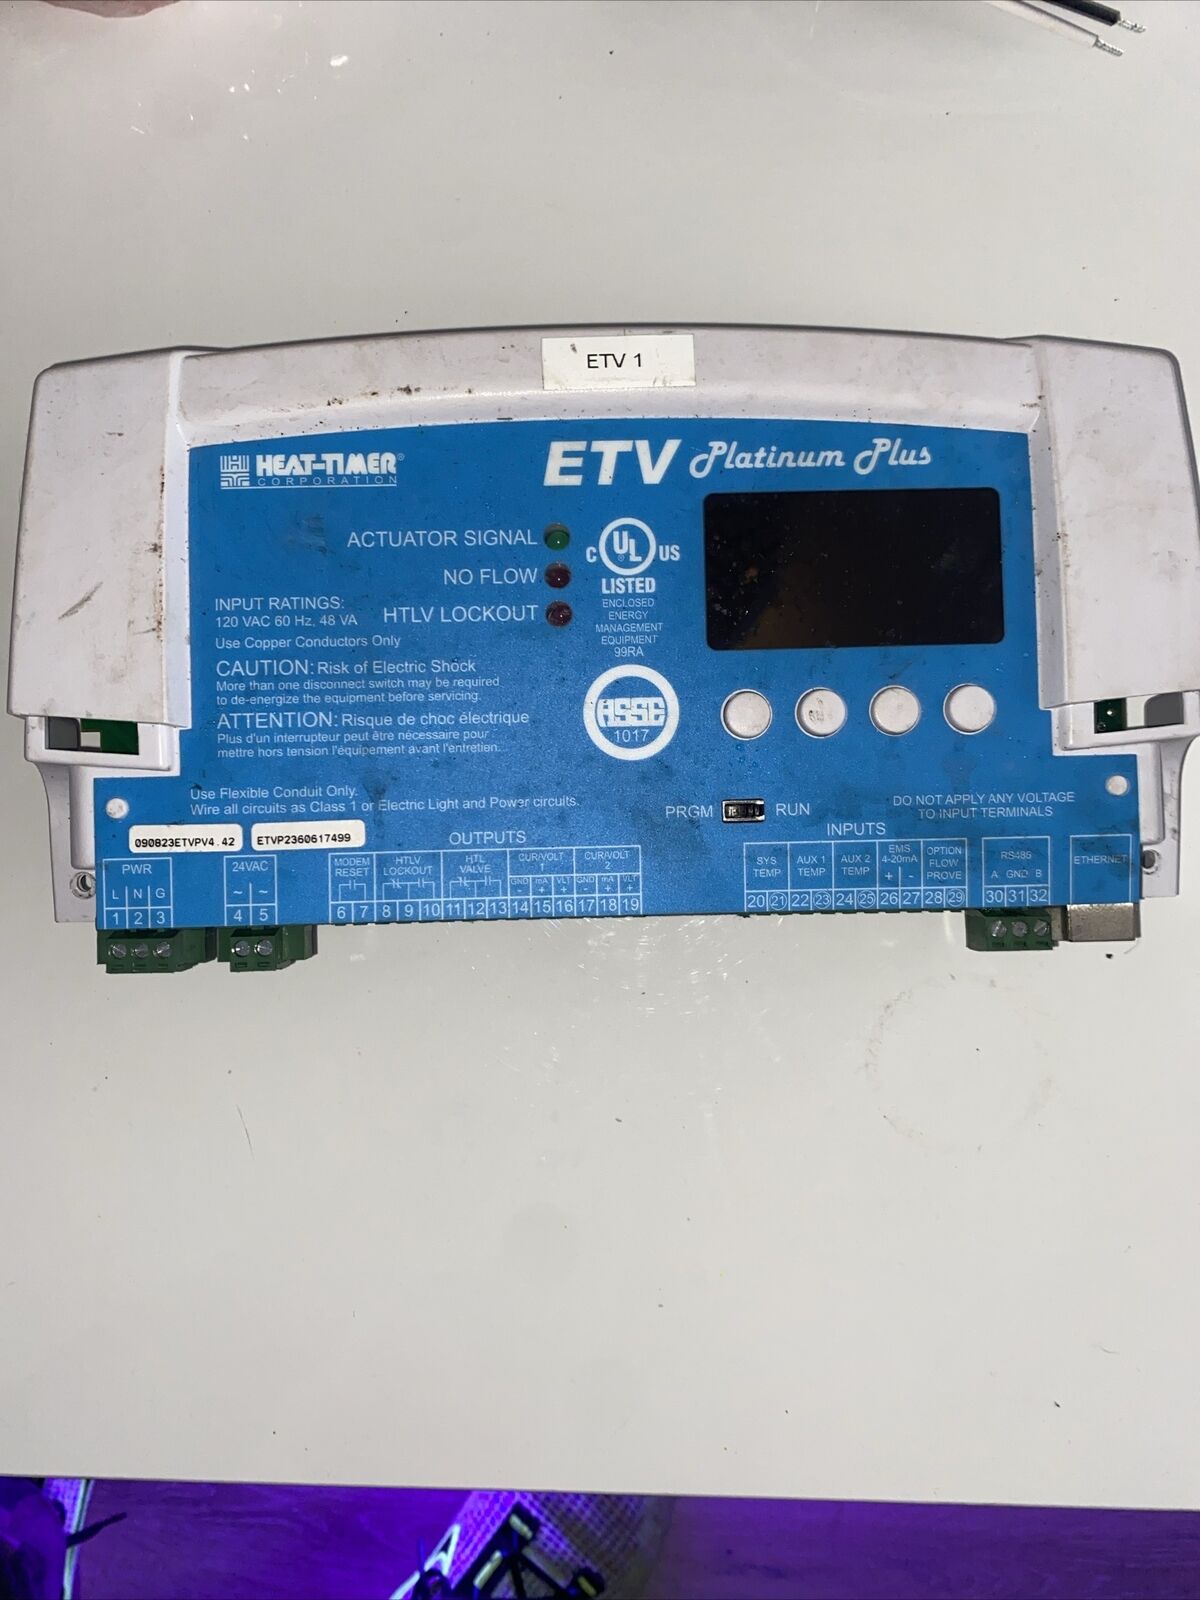 Heat-Timer ETV PLATNIUM Plus Control